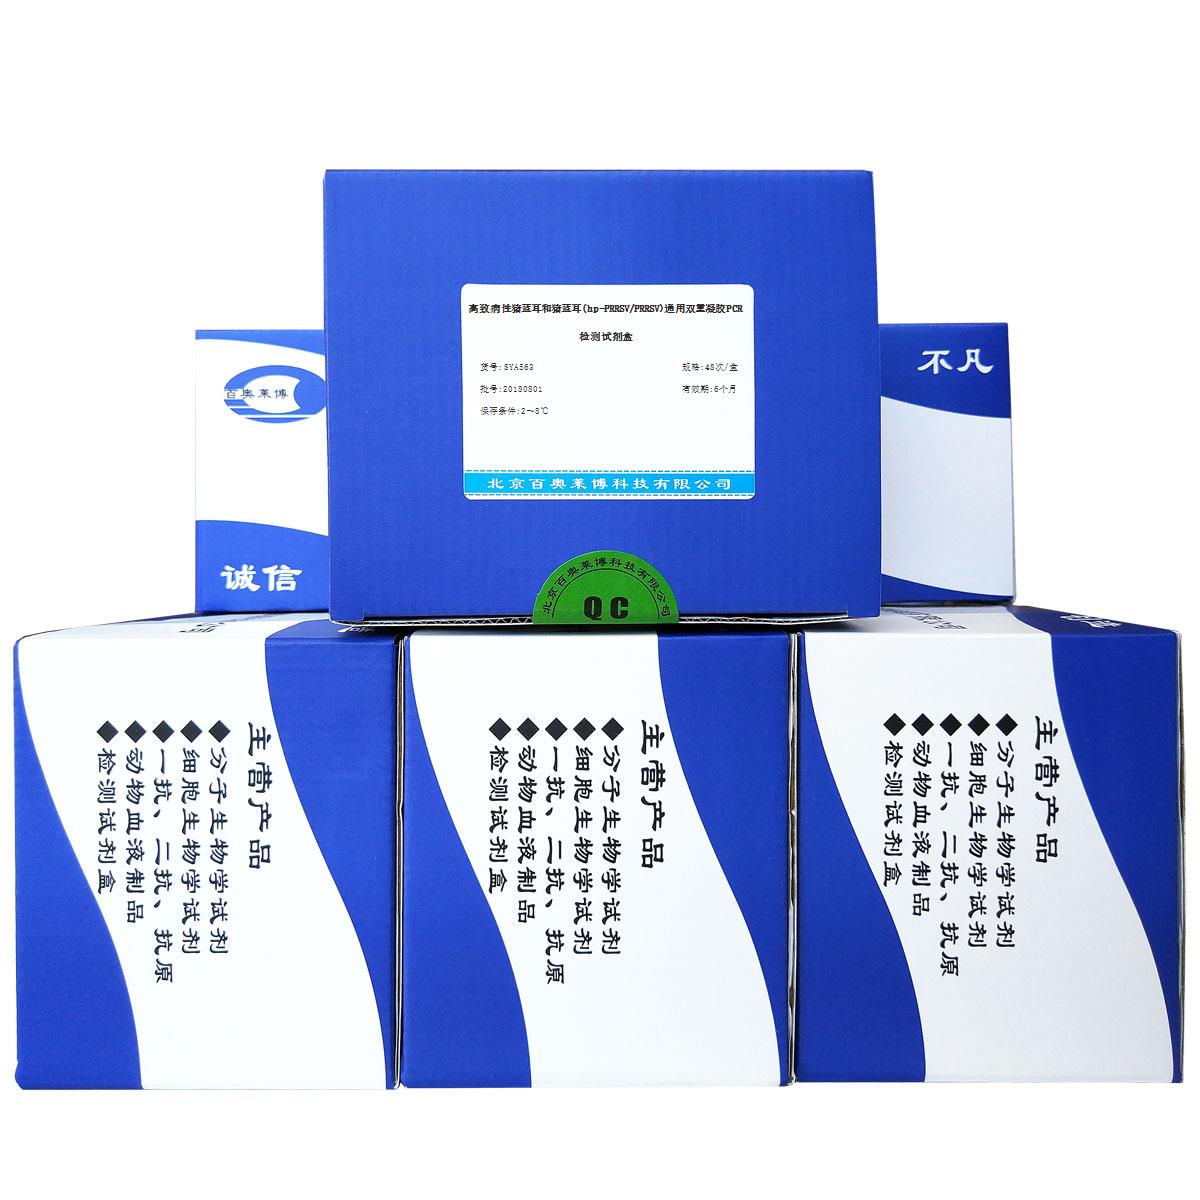 高致病性猪蓝耳和猪蓝耳(hp-PRRSV/PRRSV)通用双重凝胶PCR检测试剂盒